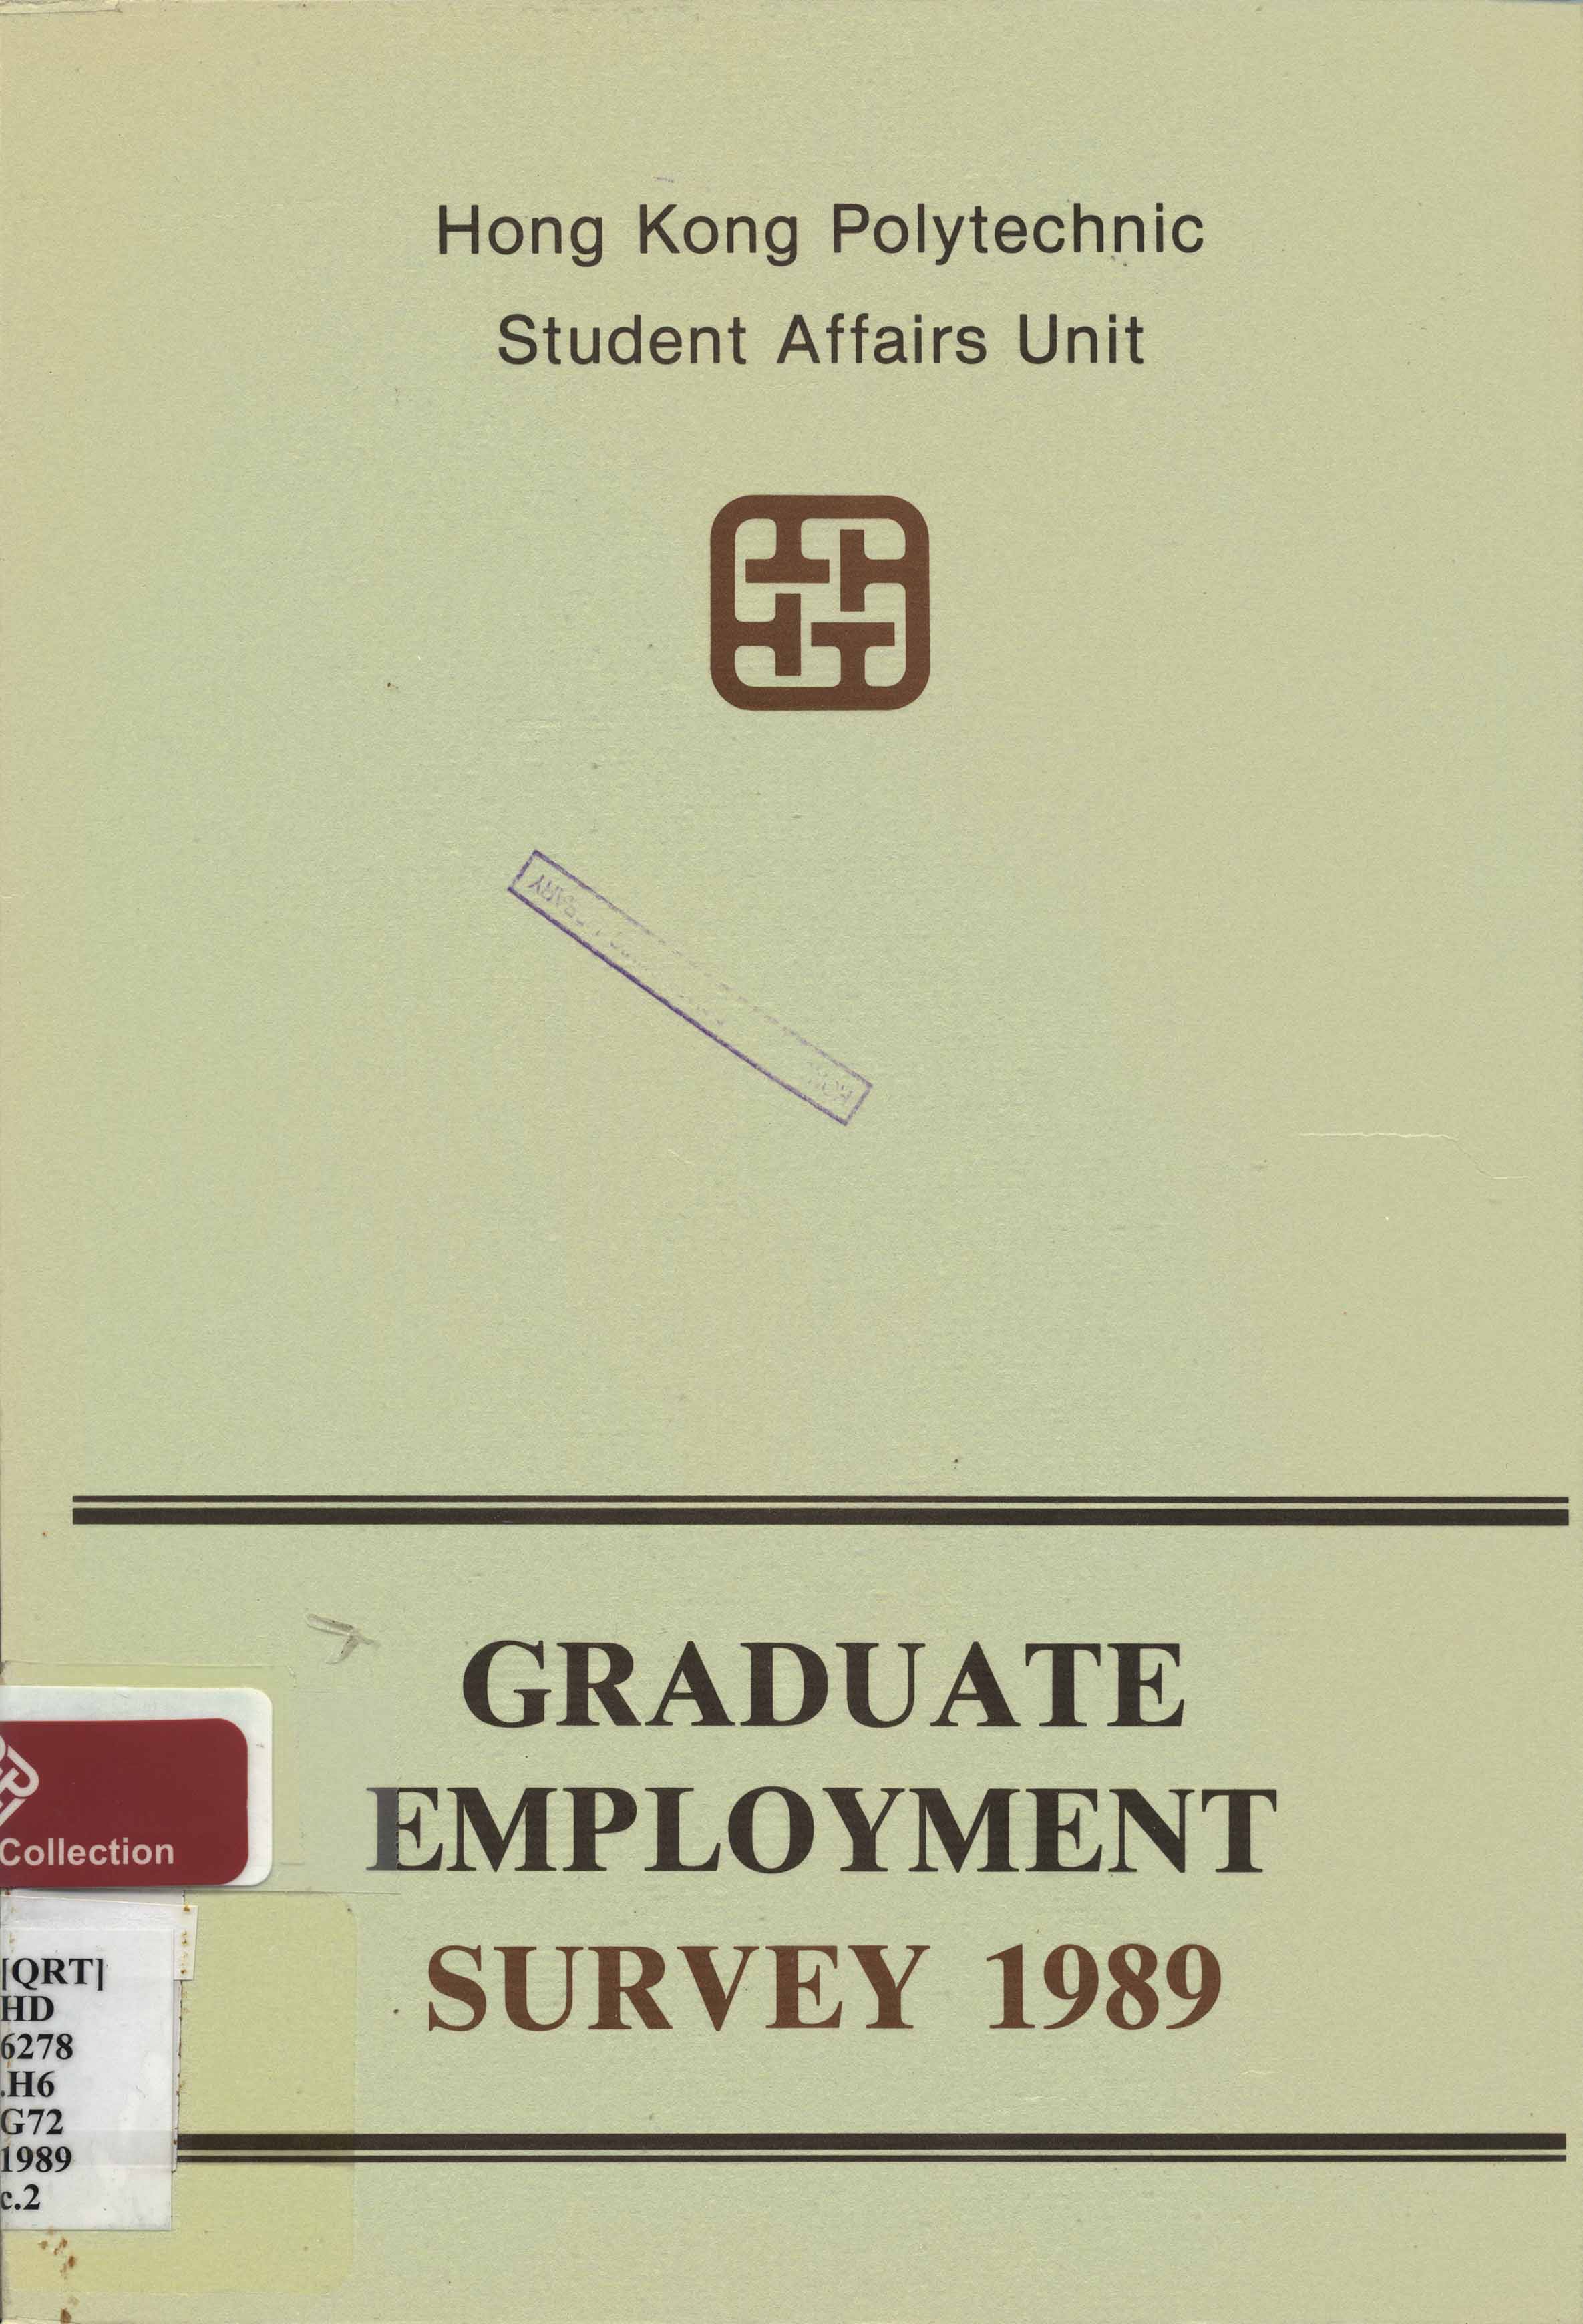 Graduate employment survey 1989